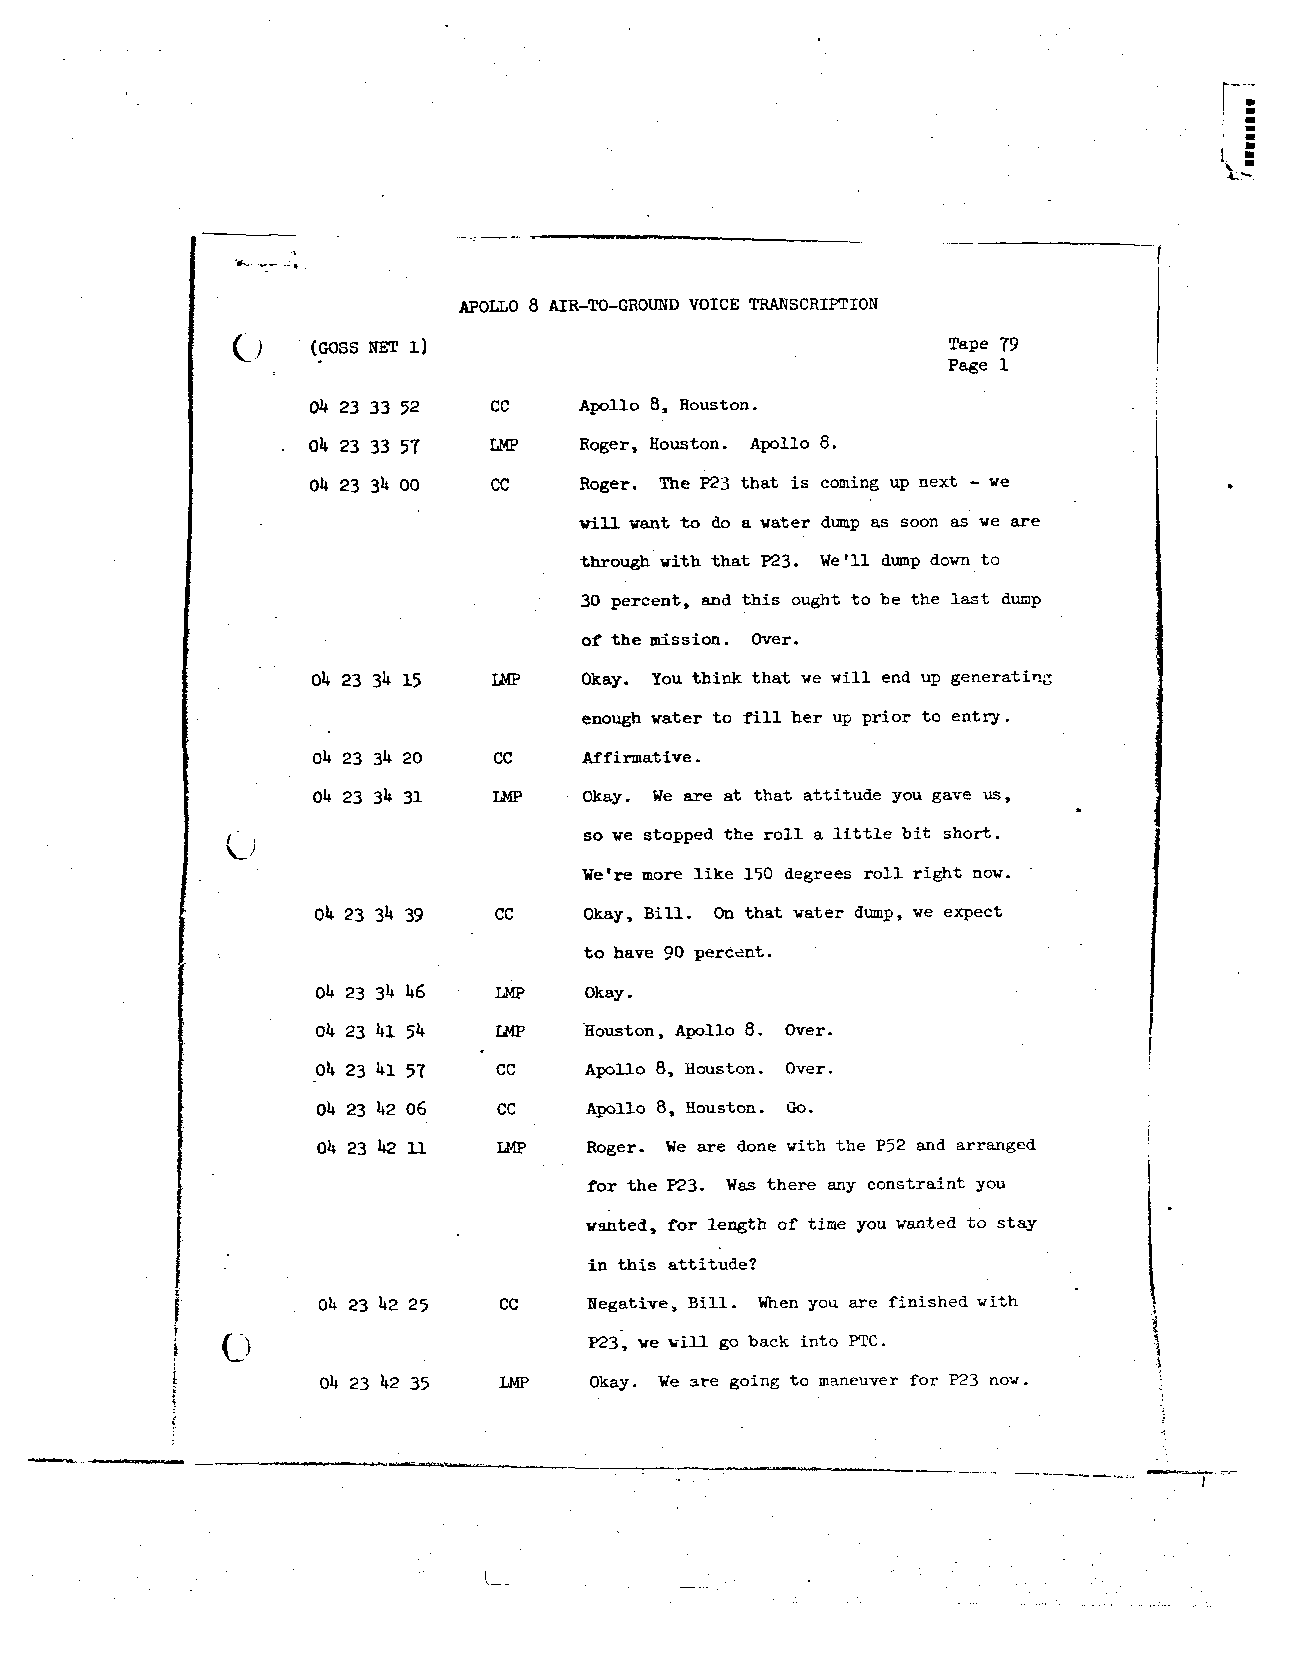 Page 652 of Apollo 8’s original transcript